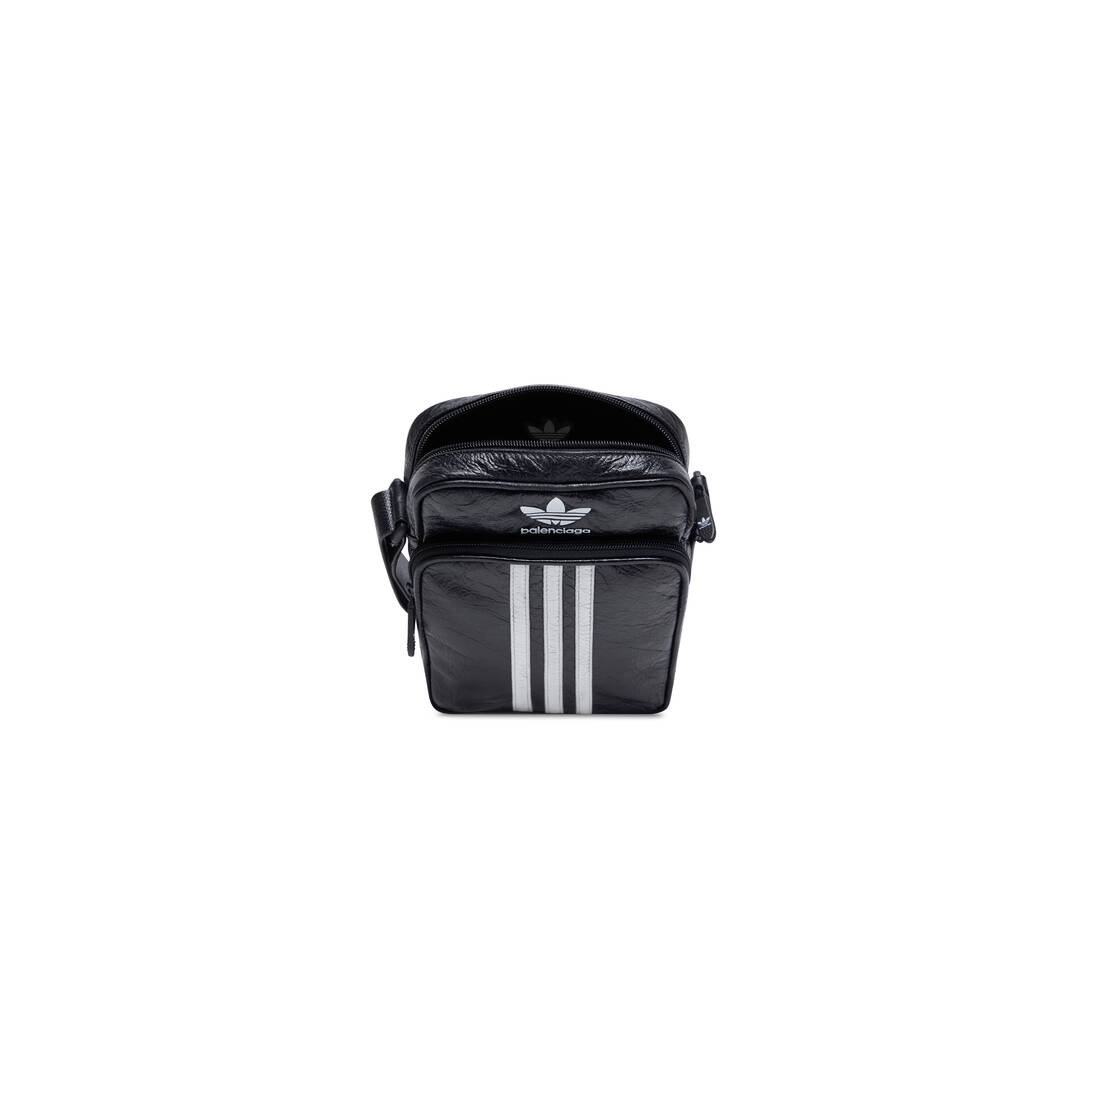 Men's Balenciaga / Adidas Small Crossbody Messenger Bag in Black - 8